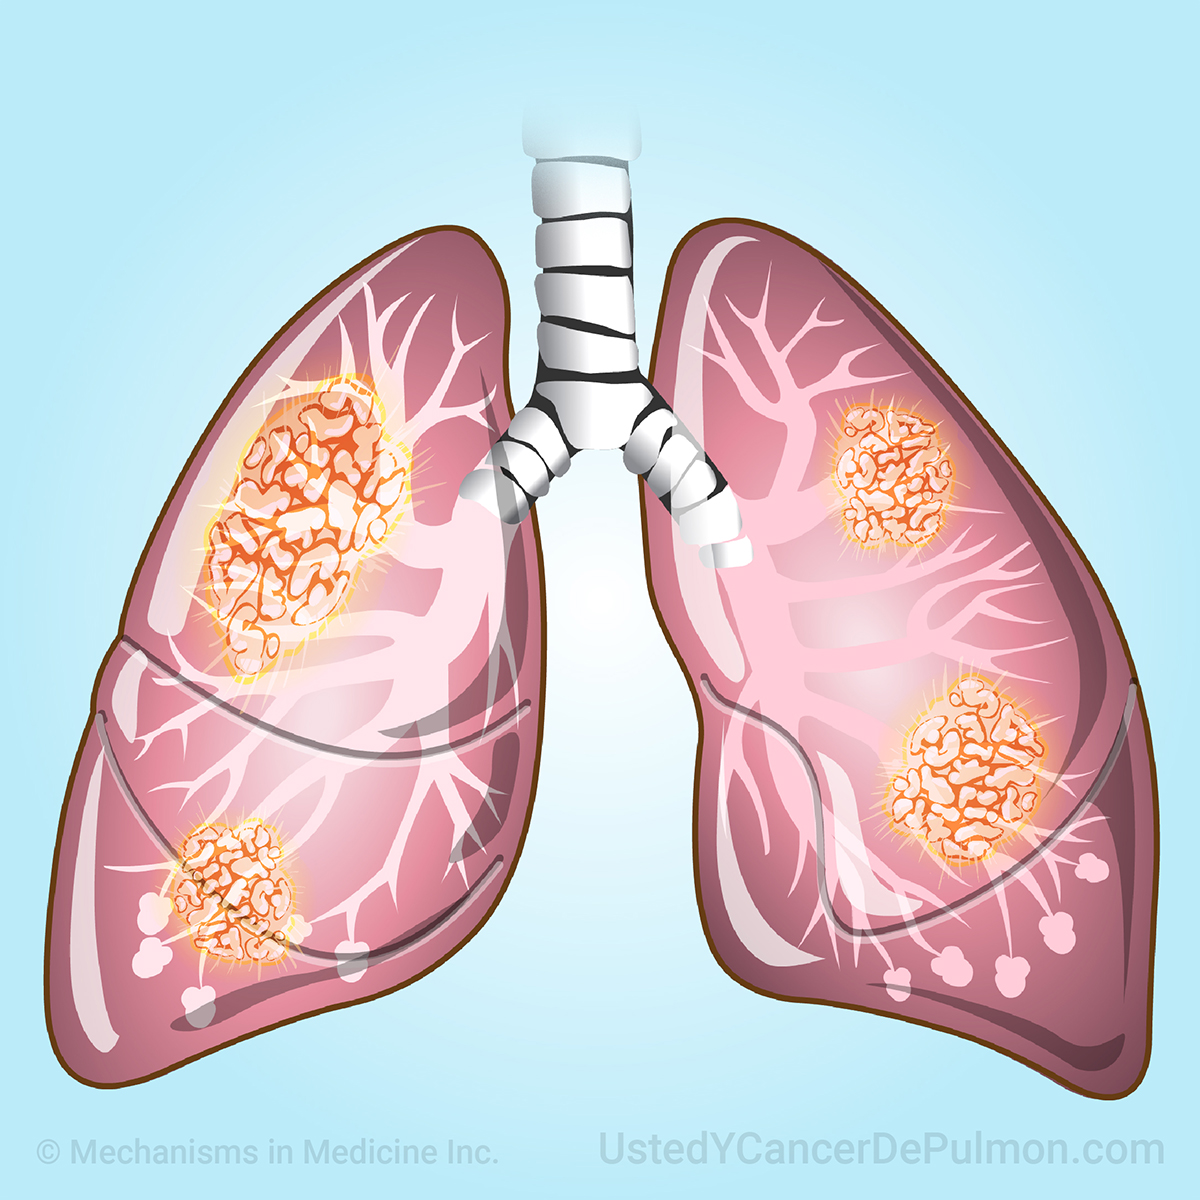 Aprenda acerca de una variedad de temas sobre el cáncer de pulmón a través de animaciones cortas